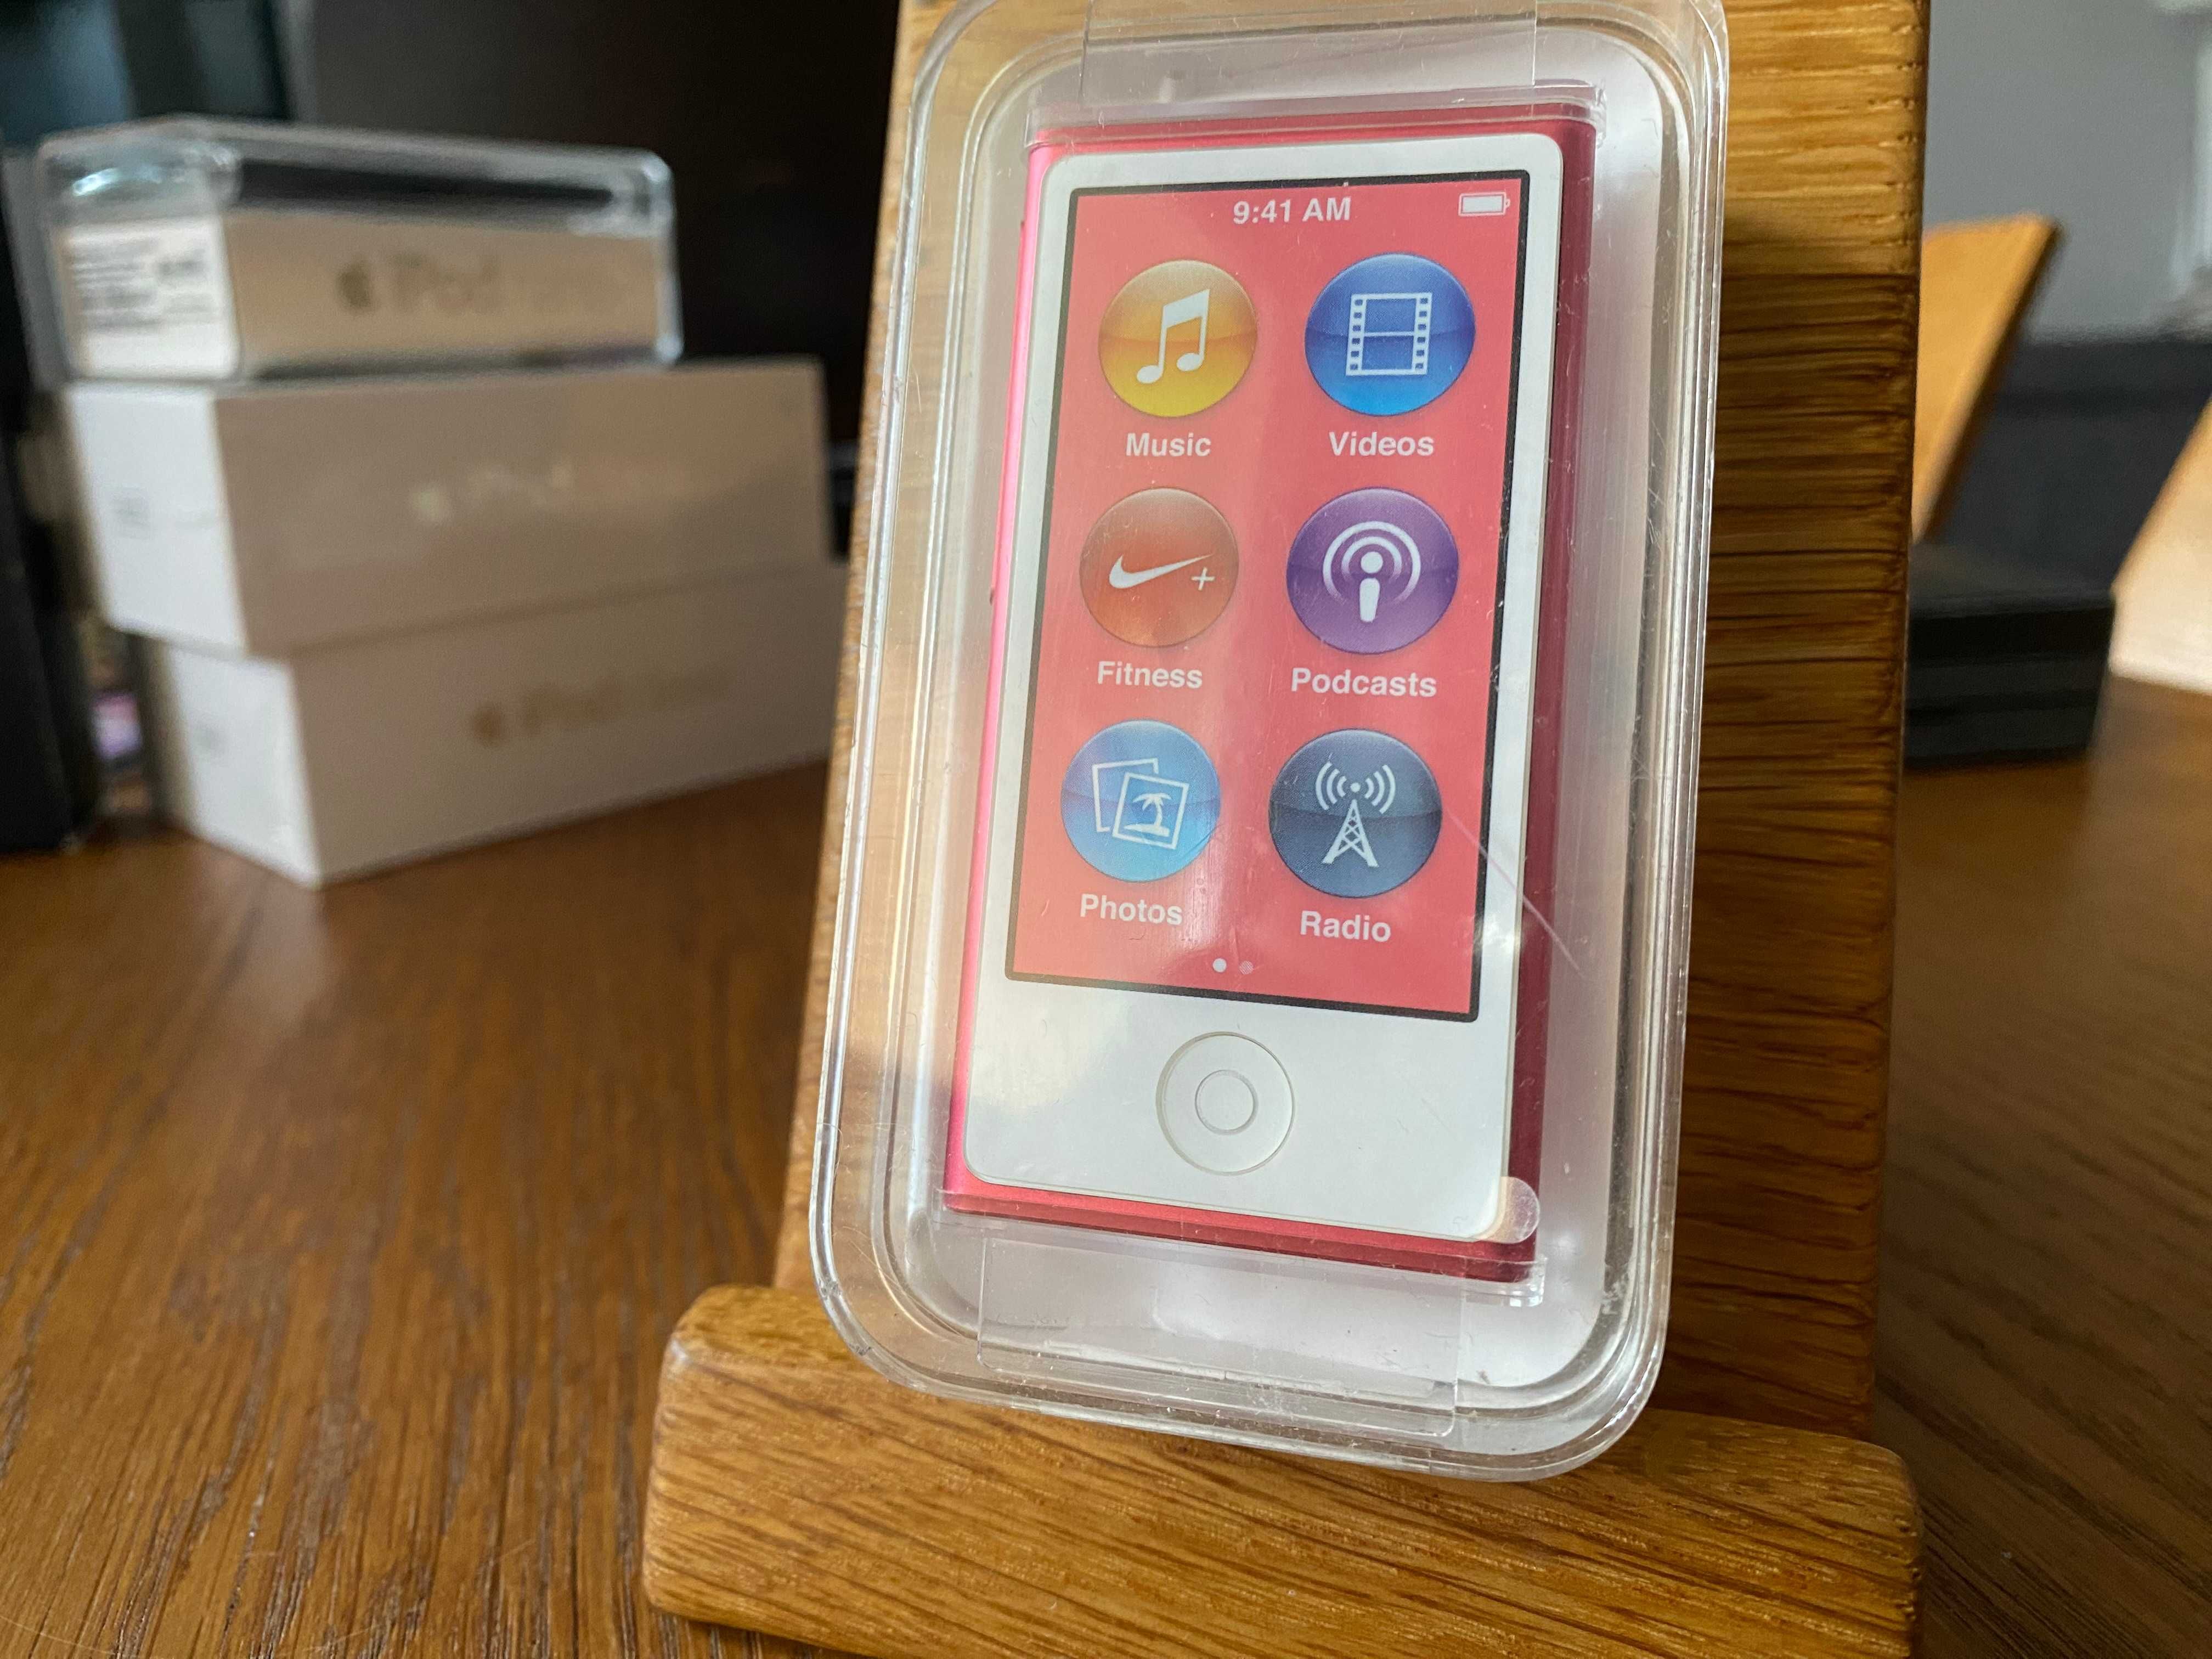 Apple iPod Nano 7G 16GB A1446 MD475LL/A Różowy Pink